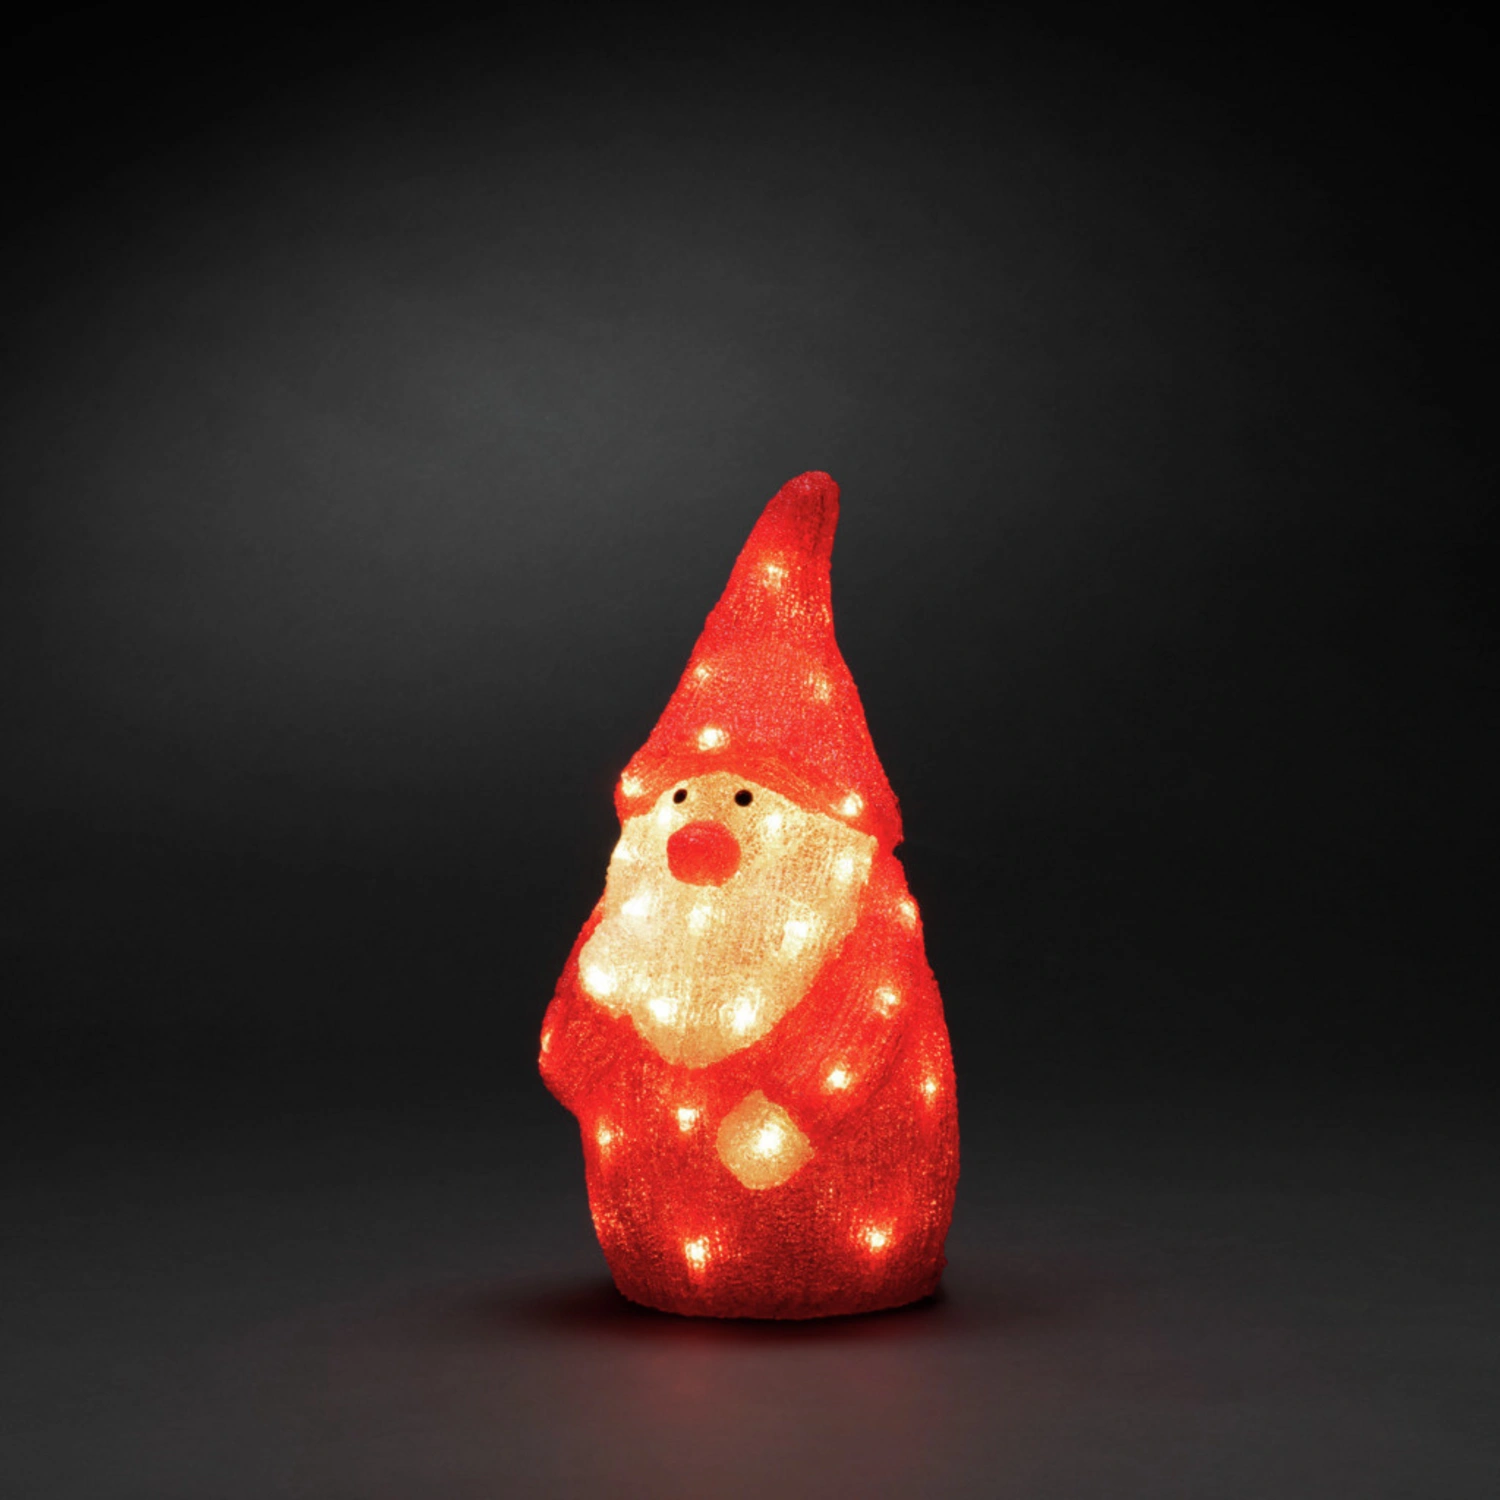 rot/weiß LED-Weihnachtsmann, Stecker, Konstsmide Dioden, 40